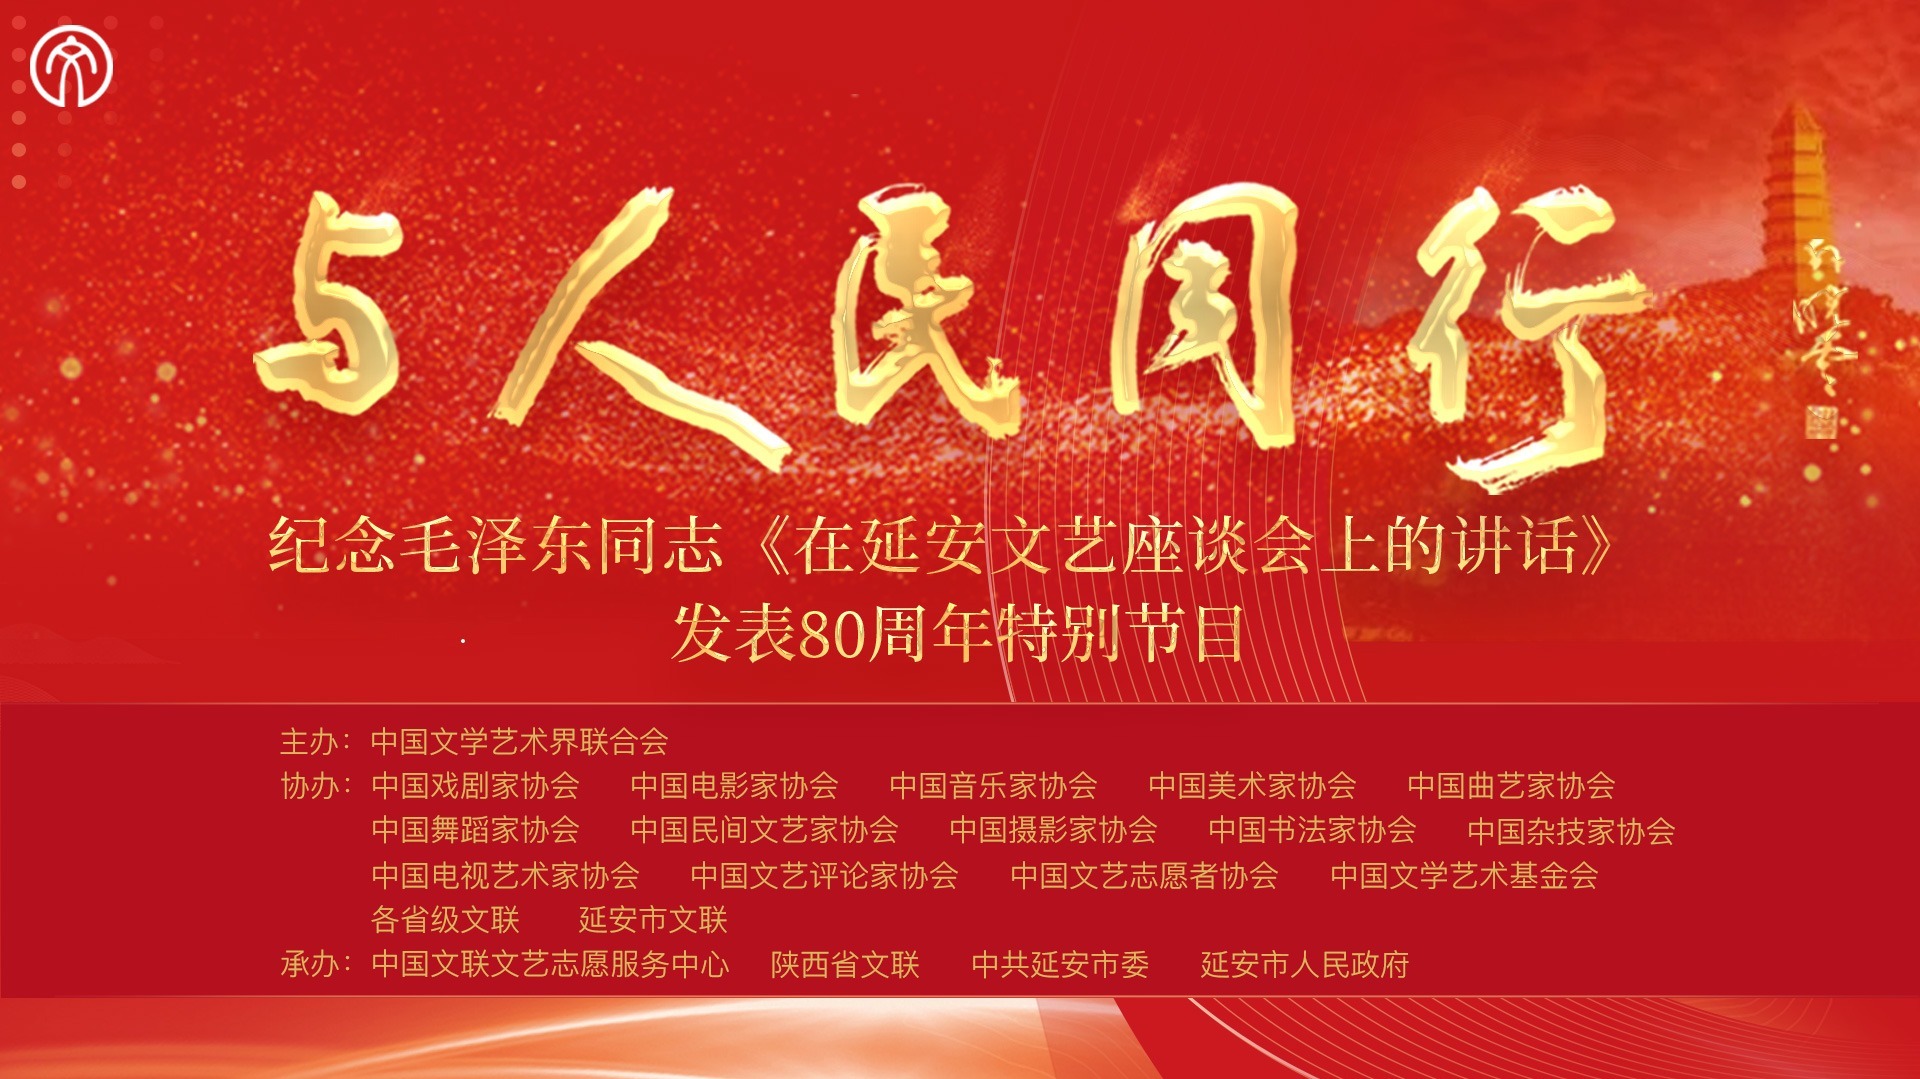 “与人民同行”——纪念毛泽东同志在延安文艺座谈会上的讲话发表80周年特别节目